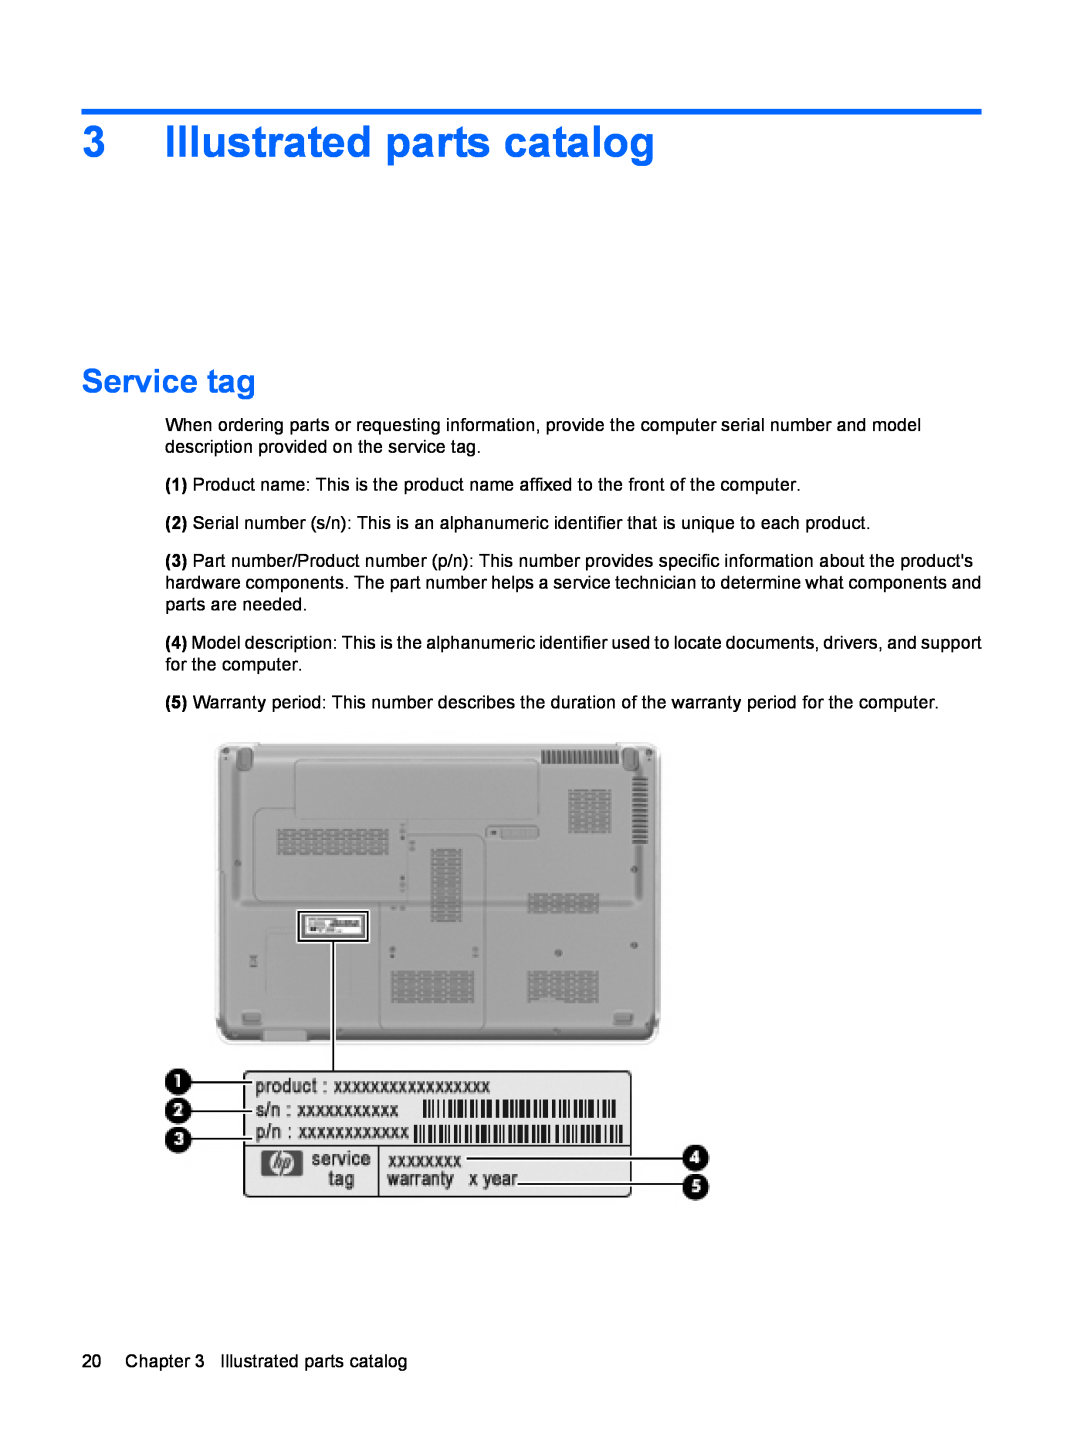 HP DV6 manual Illustrated parts catalog, Service tag 